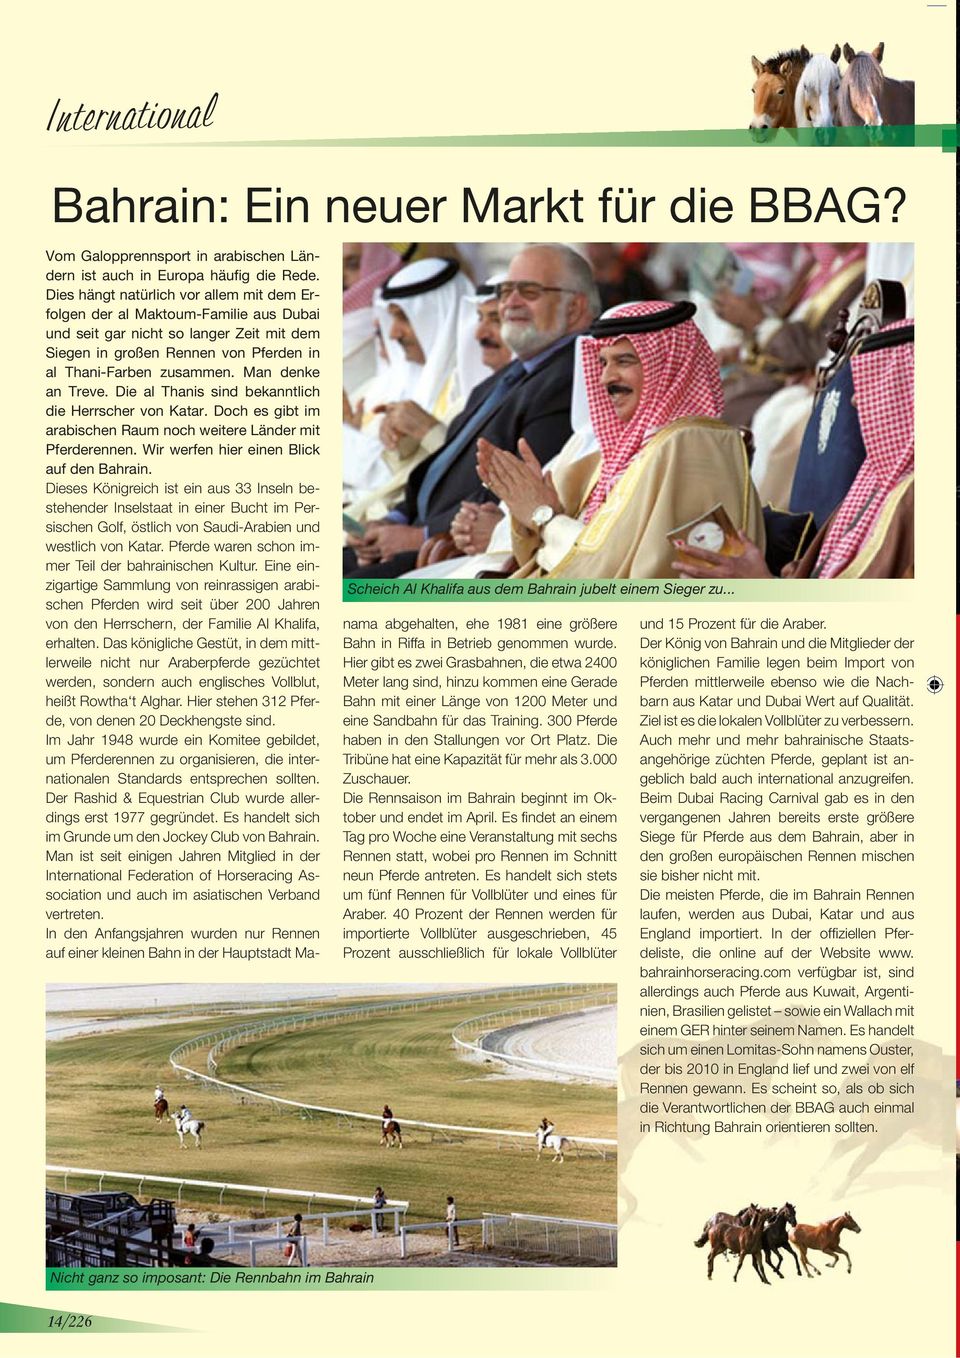 Man denke an Treve. Die al Thanis sind bekanntlich die Herrscher von Katar. Doch es gibt im arabischen Raum noch weitere Länder mit Pferderennen. Wir werfen hier einen Blick auf den Bahrain.